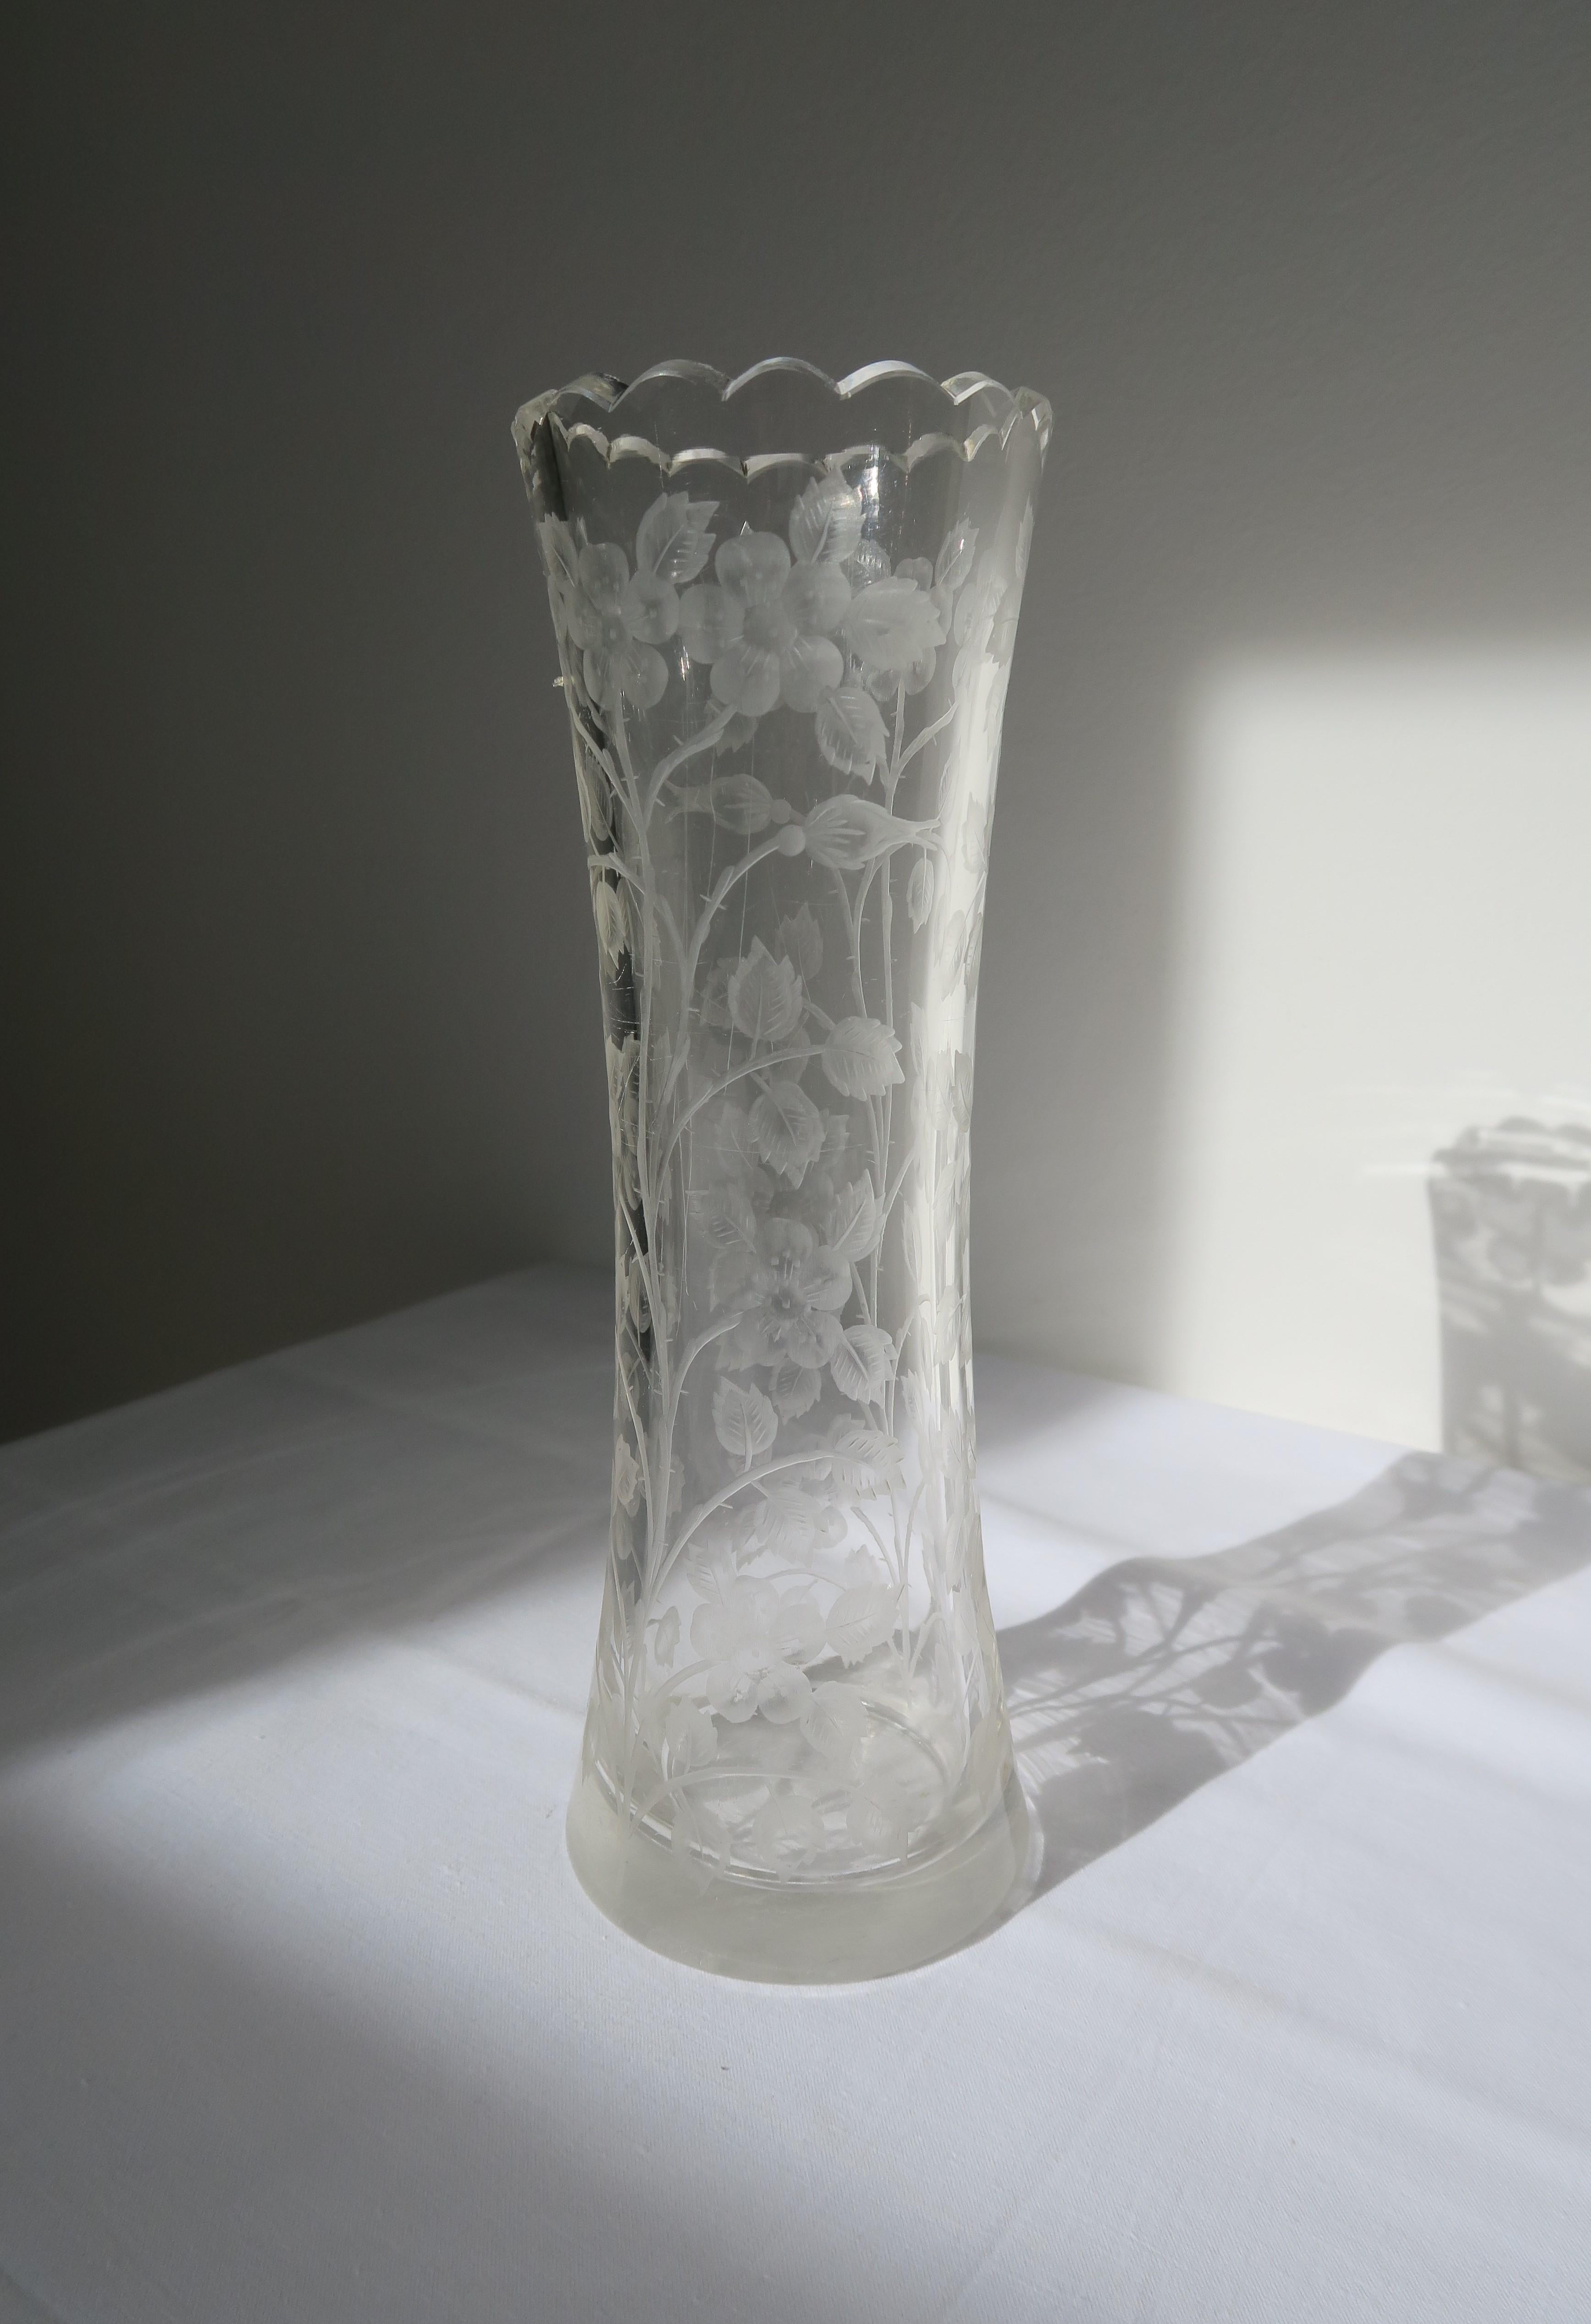 Originale Vase aus geschliffenem Glas der Glashütte Moser, ca. 1910-1920. Entworfen vom renommierten Karlsbader Designer Ludwig Moser, zeichnet sie sich durch einen gewellten Rand und ein wunderschönes Rosendesign aus, das in das Glas geschliffen